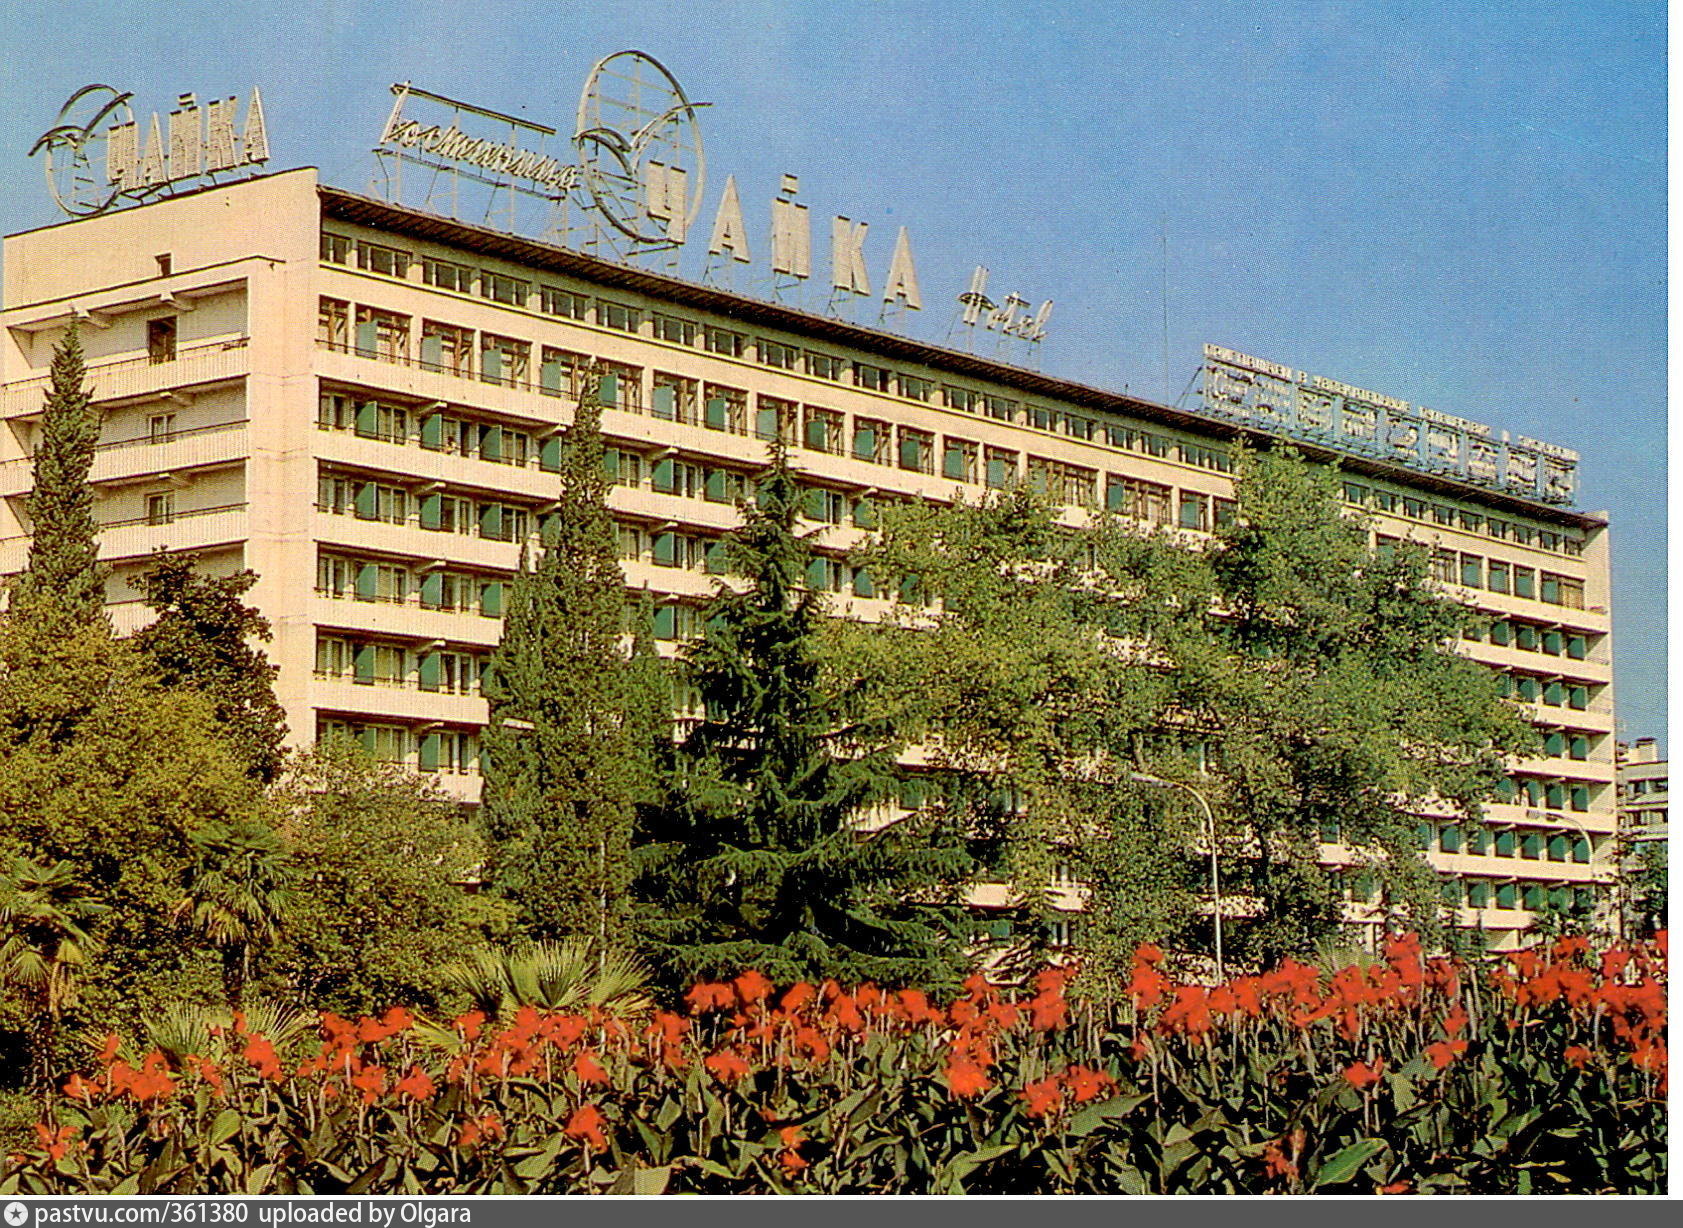 Гостиница Чайка в Сочи 1990